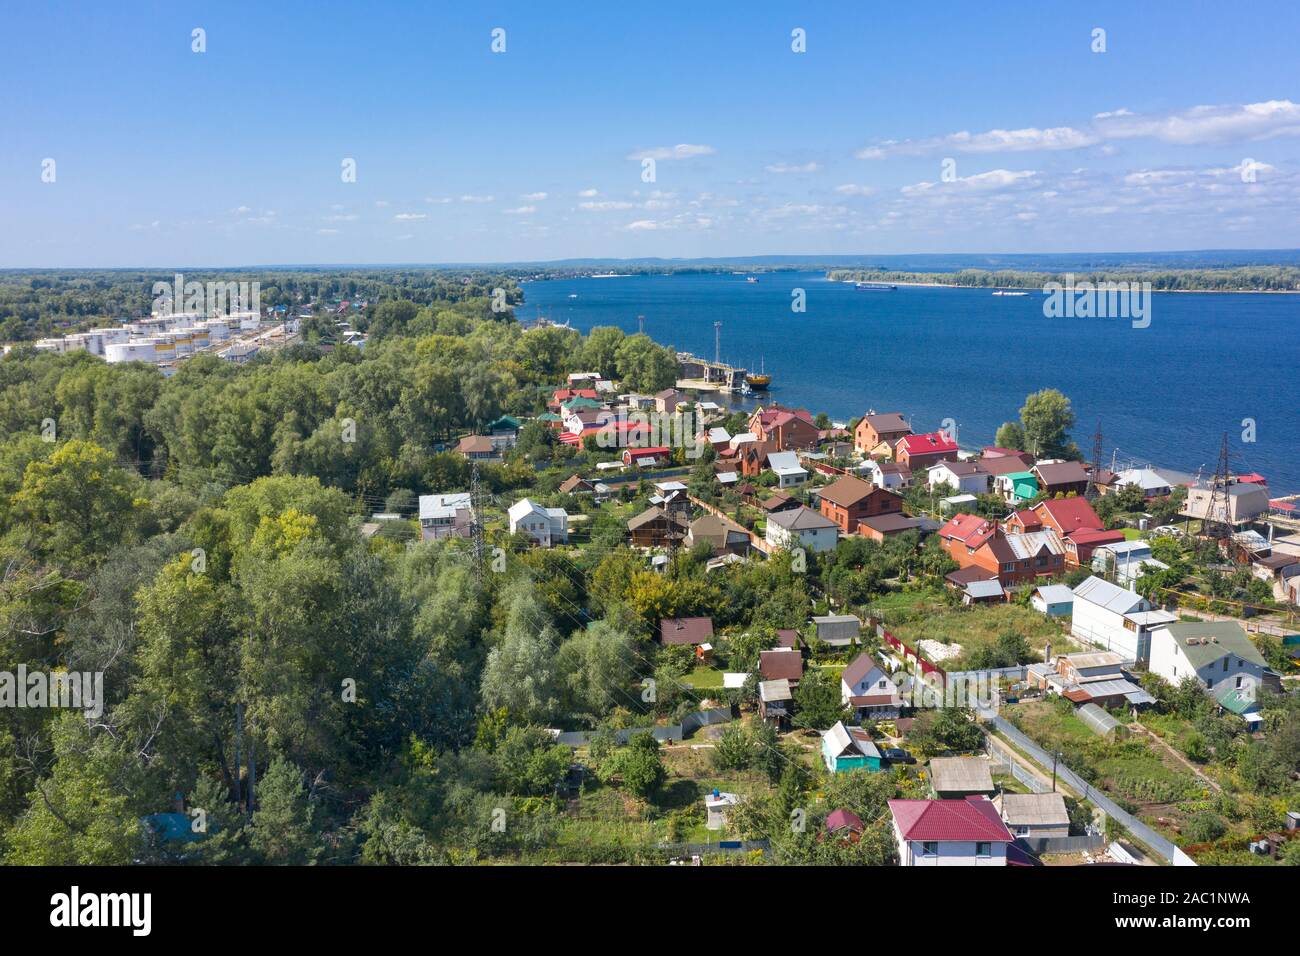 Vista superior del río Volga y casas en la costa. barcazas flotando en el río. casas de campo y parcelas por el río. Foto de stock